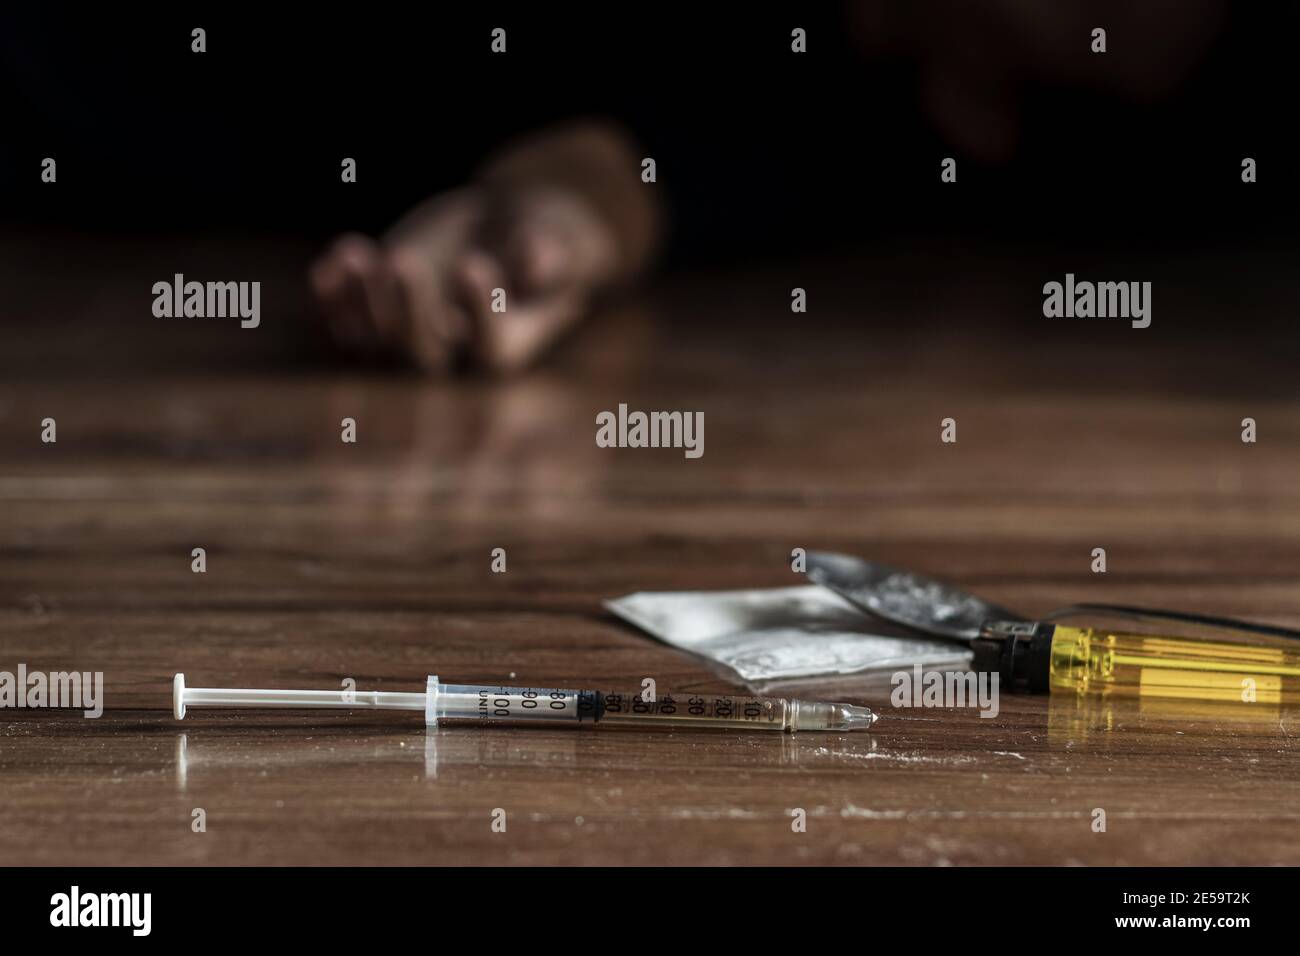 Drogenabhängiger , Junkie Problem Konzept. Nahaufnahme von Drogenspritze und gekochtes Heroin auf dem Boden mit Drogenabhängigen Hand aus schwarzem Hintergrund zu erreichen Stockfoto